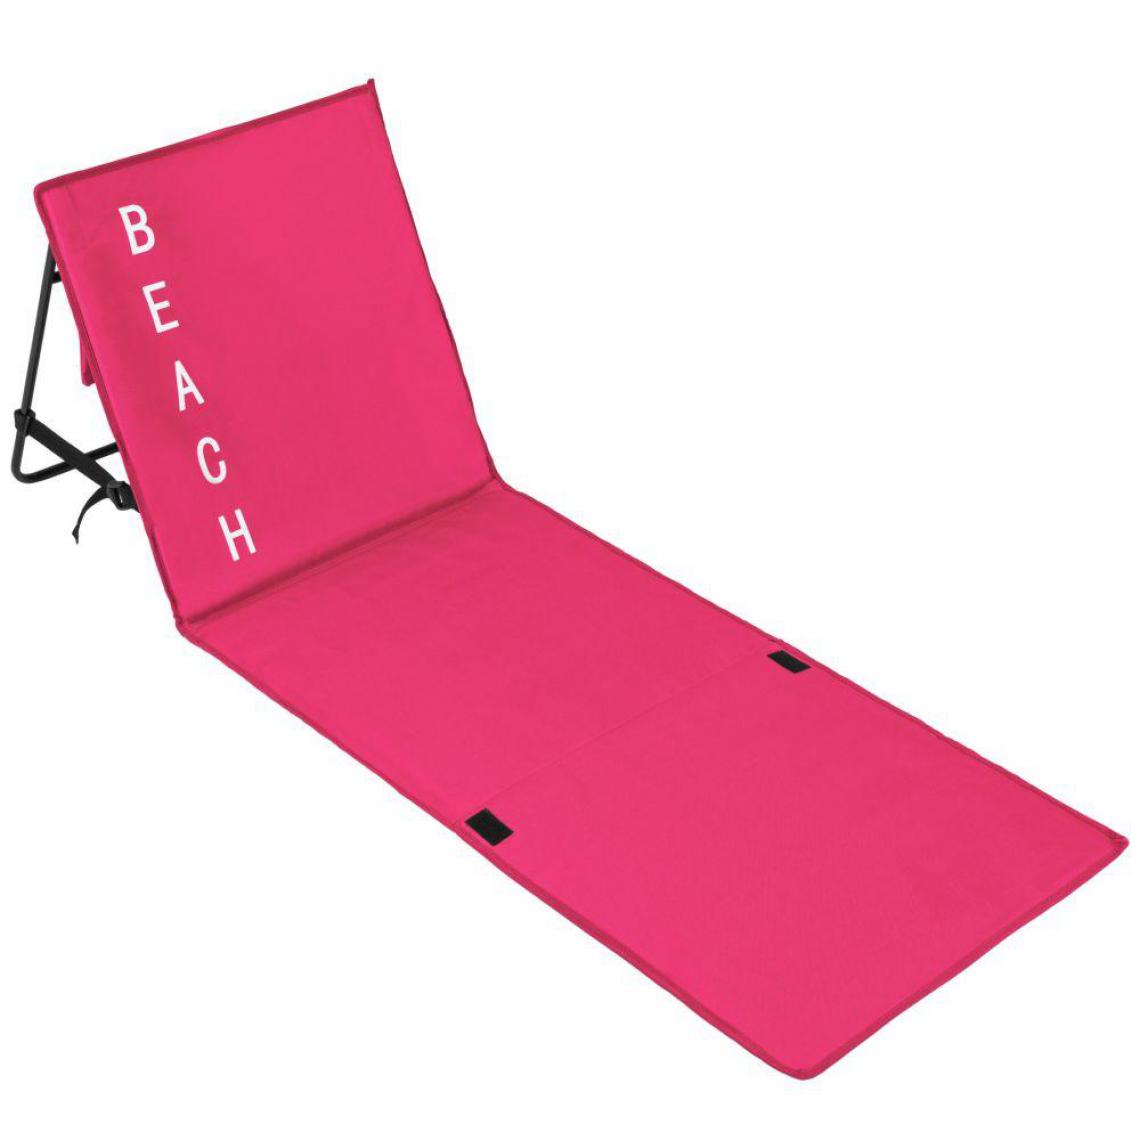 Helloshop26 - Transat bain de soleil meuble jardin de plage rose 2208107 - Transats, chaises longues